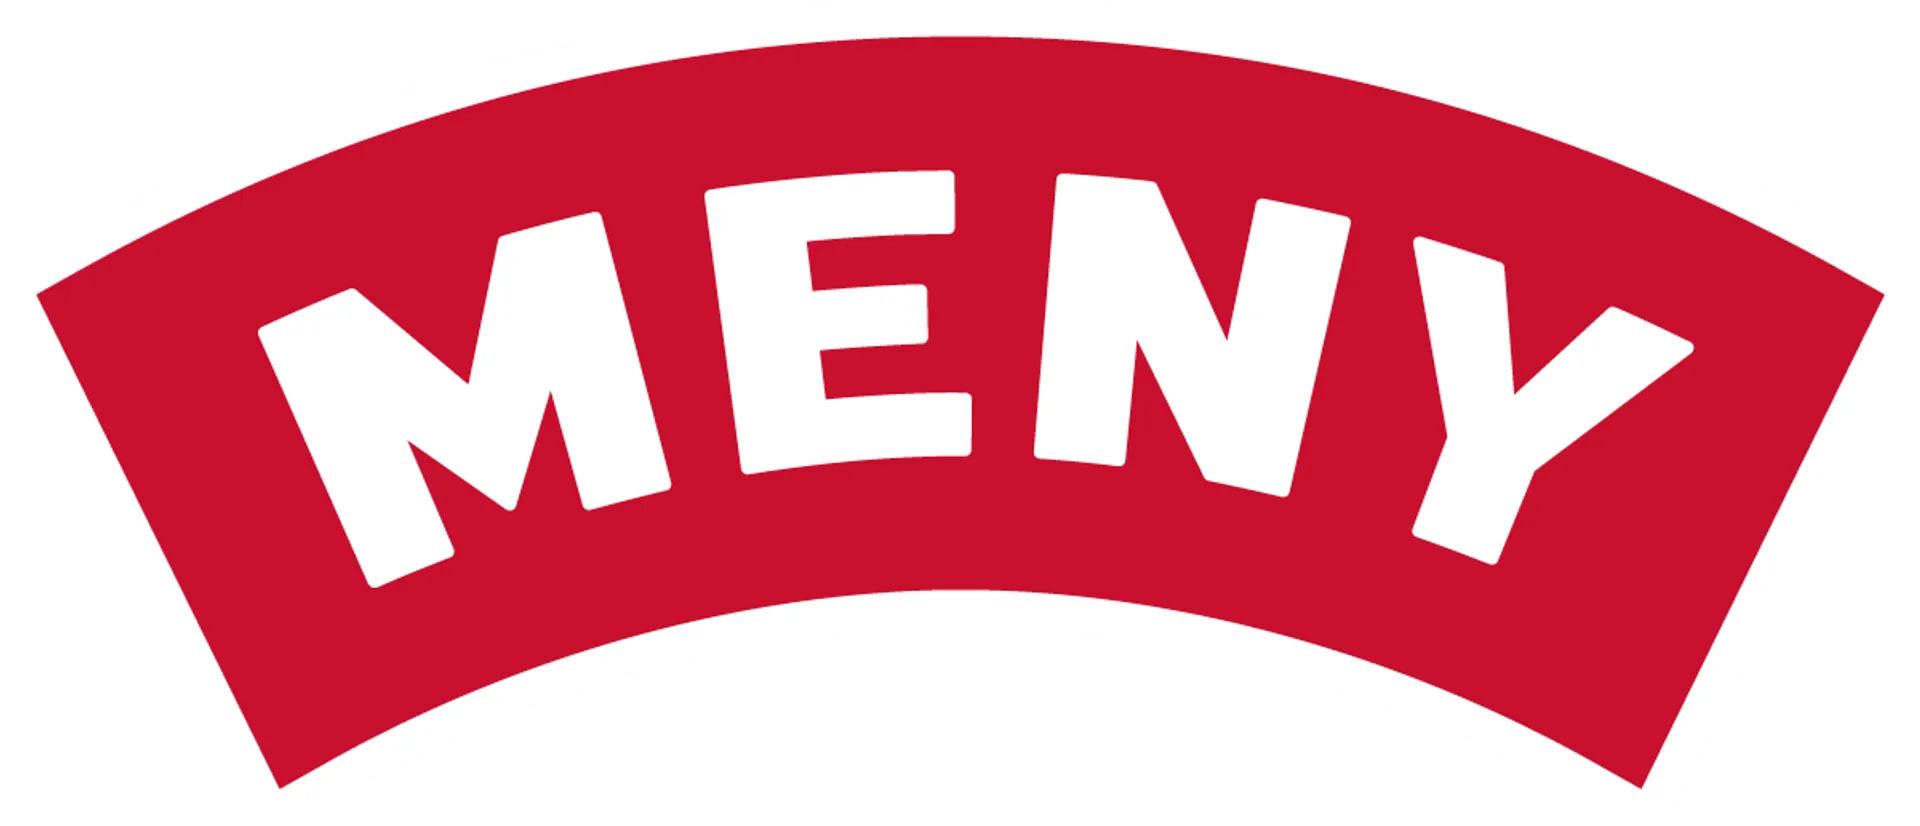 MENY logo